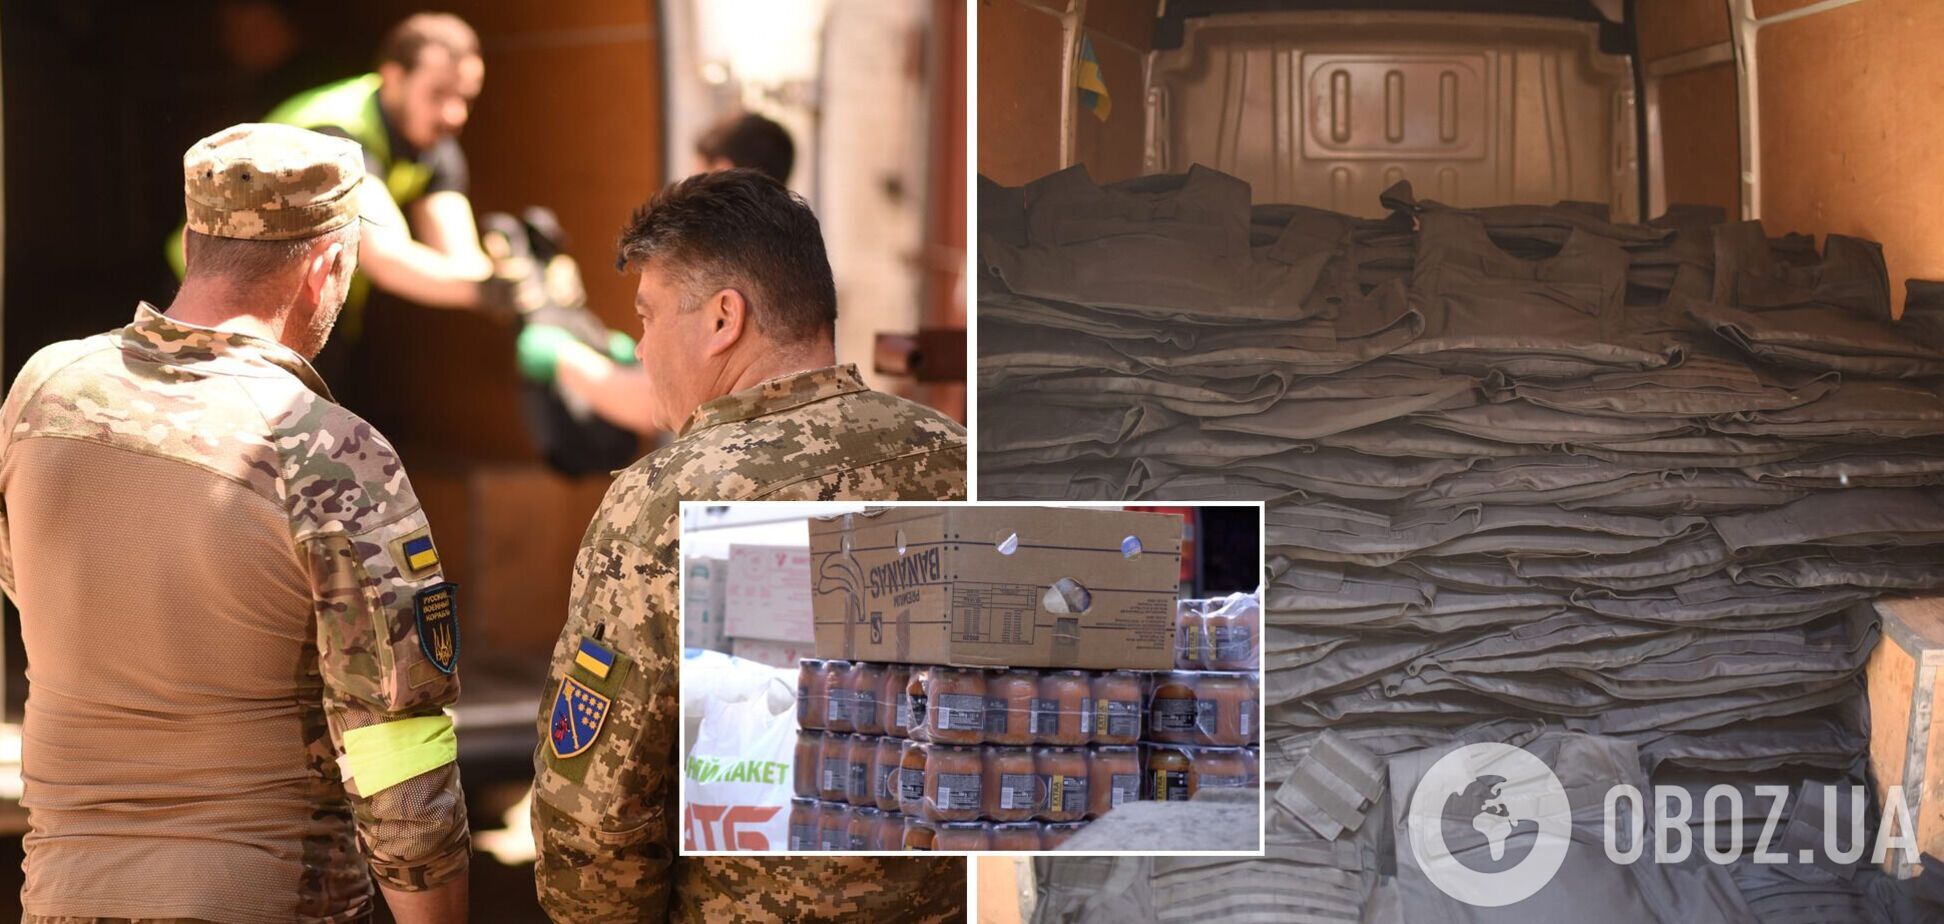 'ТAPS-Україна' та волонтери Дніпра передали медикаменти й гумдопомогу для лікарні у Бахмуті